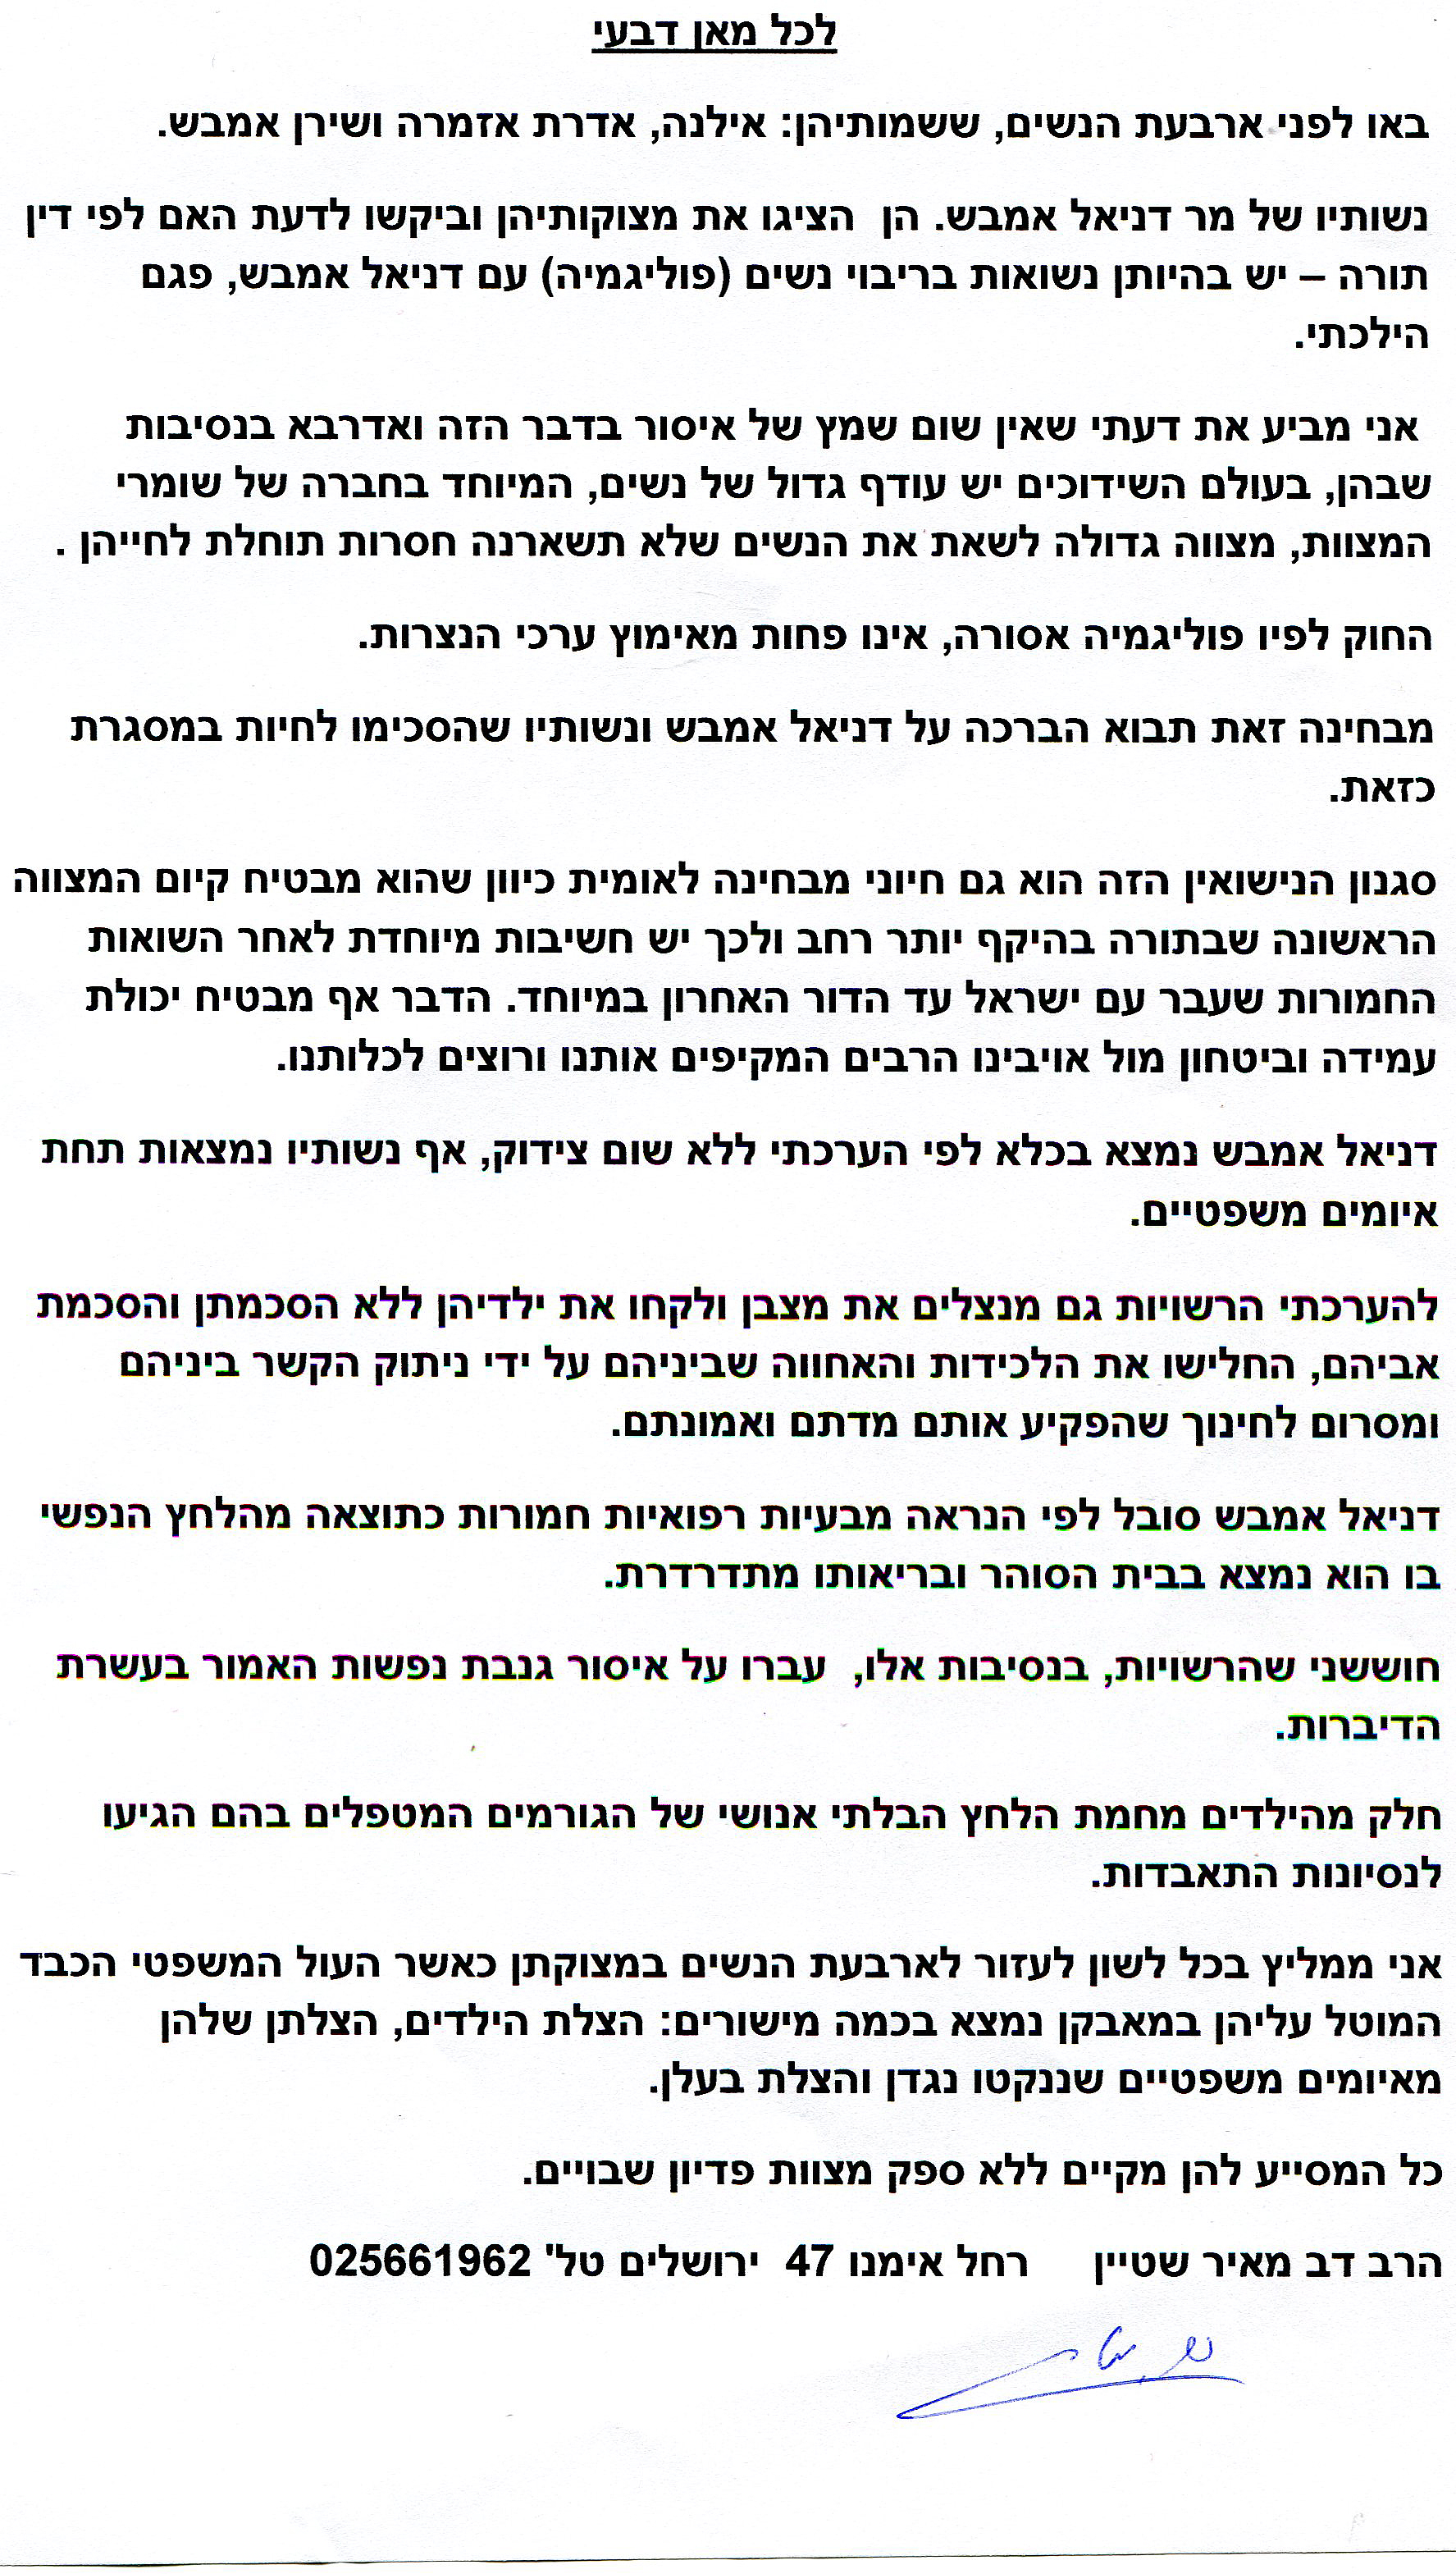 letter of Rabbi Dov Meir Stein, hebrewjpg.jpg